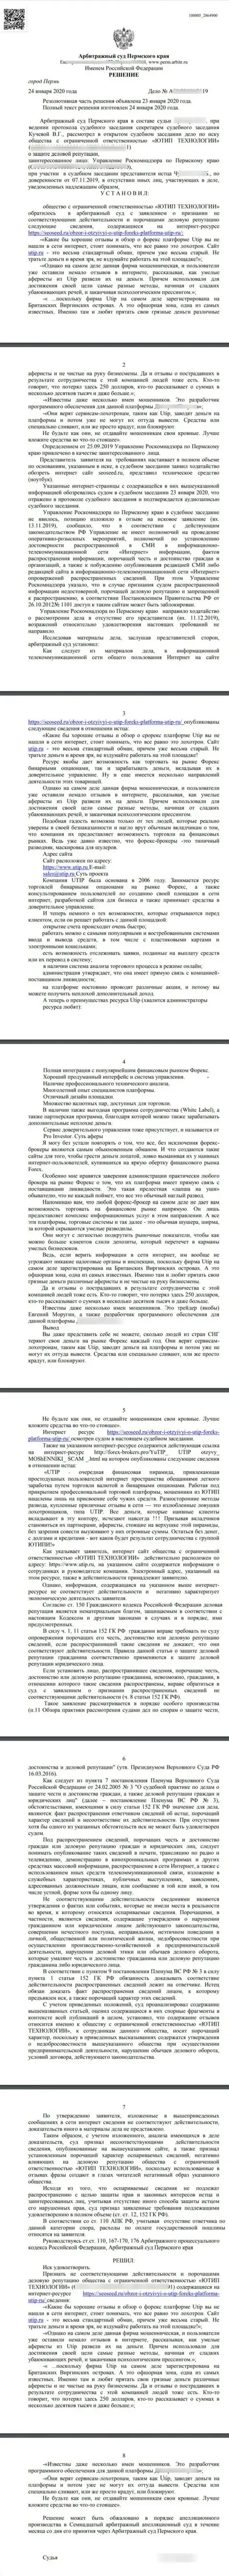 Исковое заявление разводил UTIP в отношении сайта seoseed ru, который был удовлетворен самым справедливым судом в мире